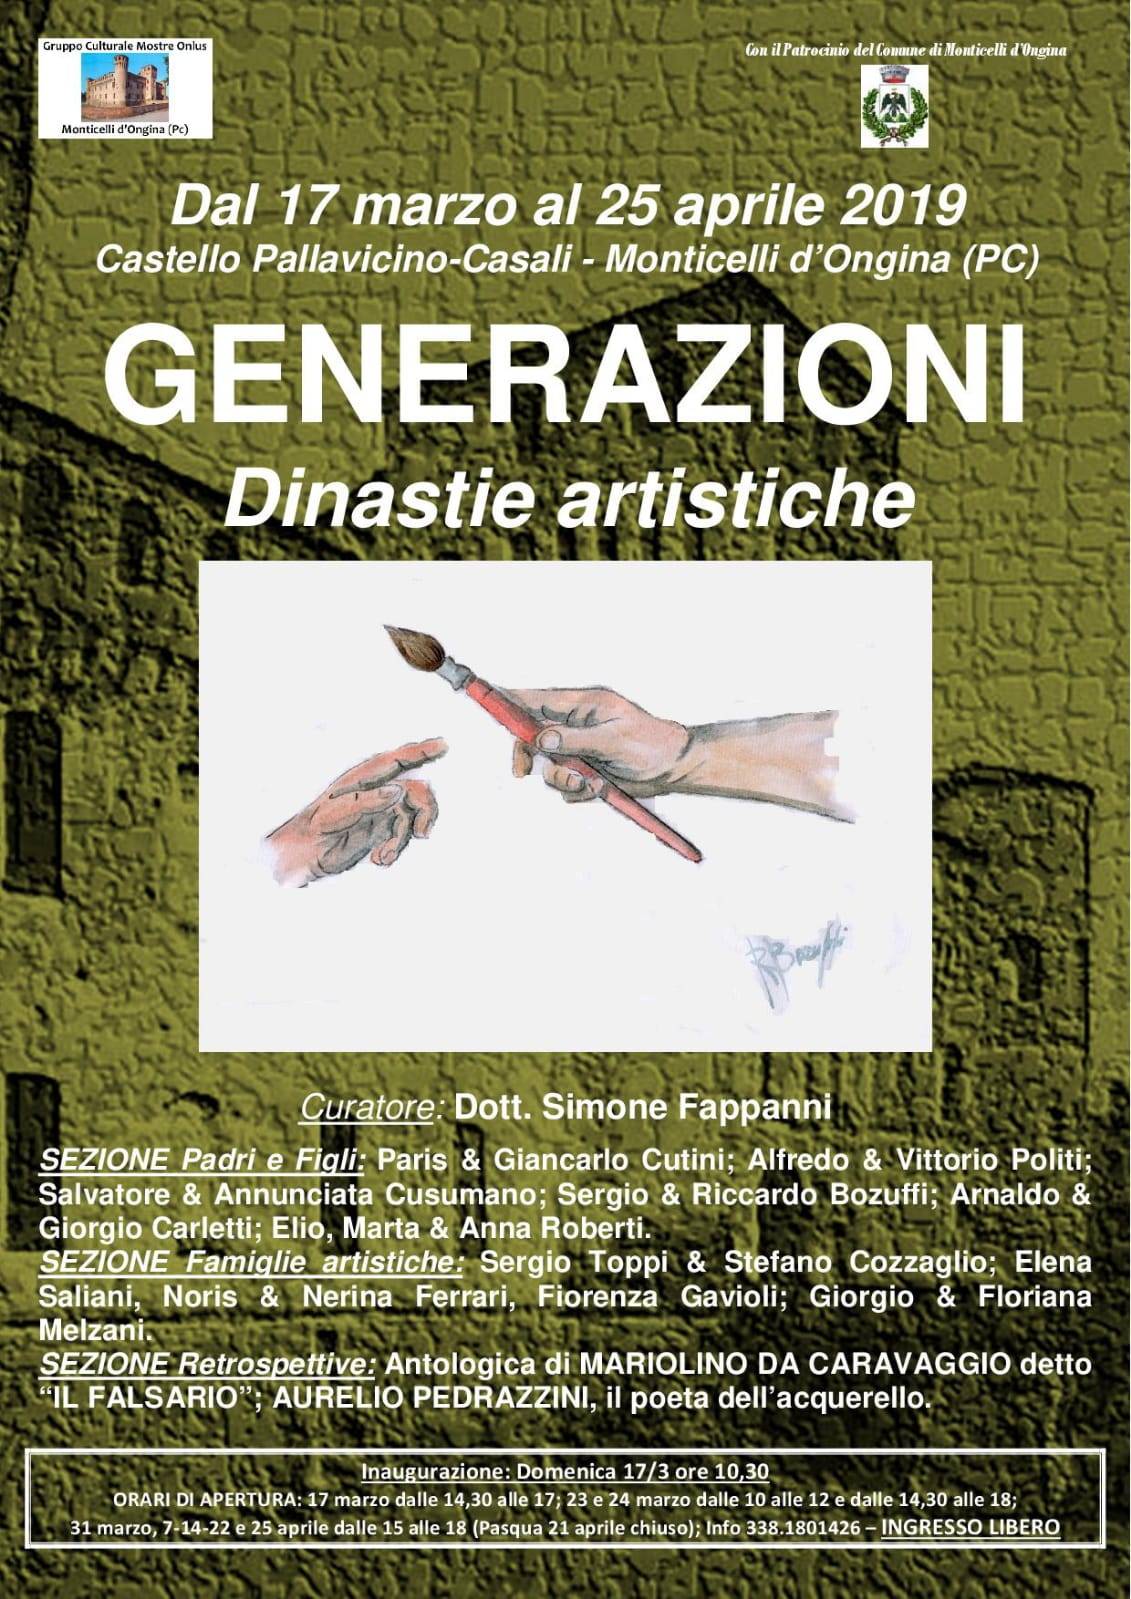 Generazioni - Dinastie artistiche